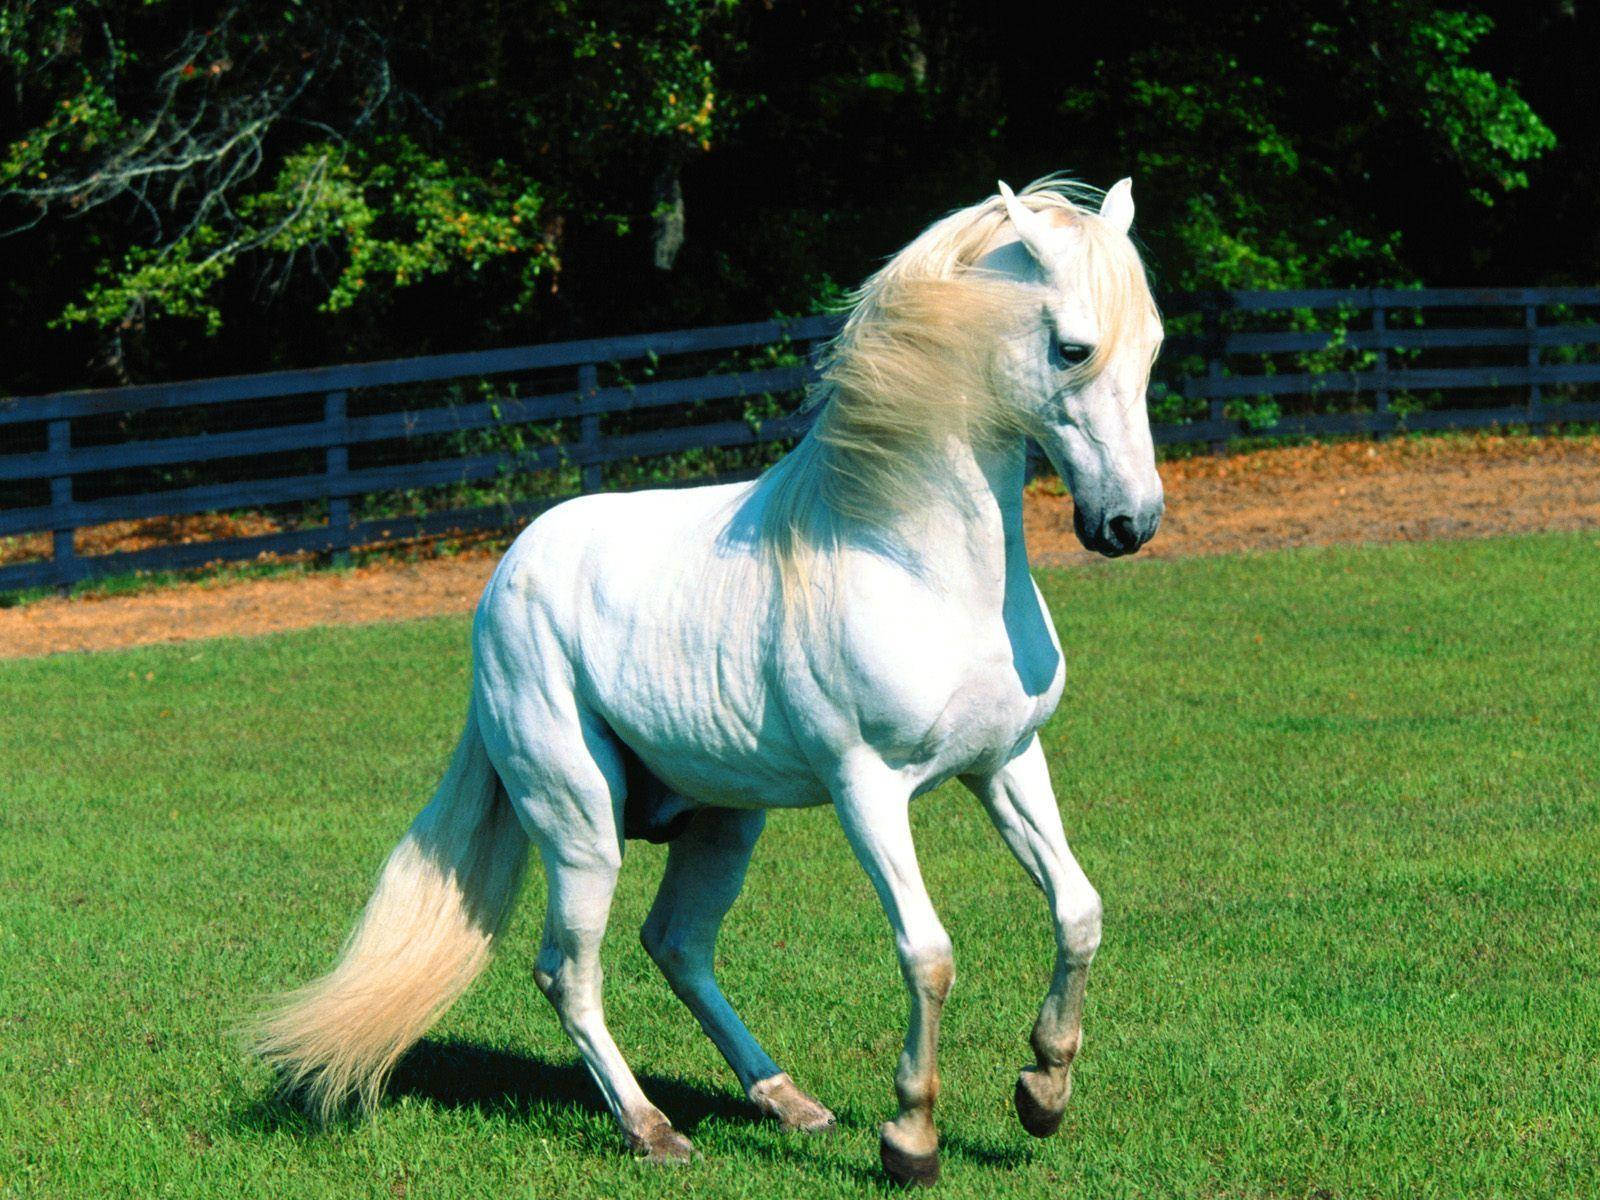 Cute Horse On Green Field